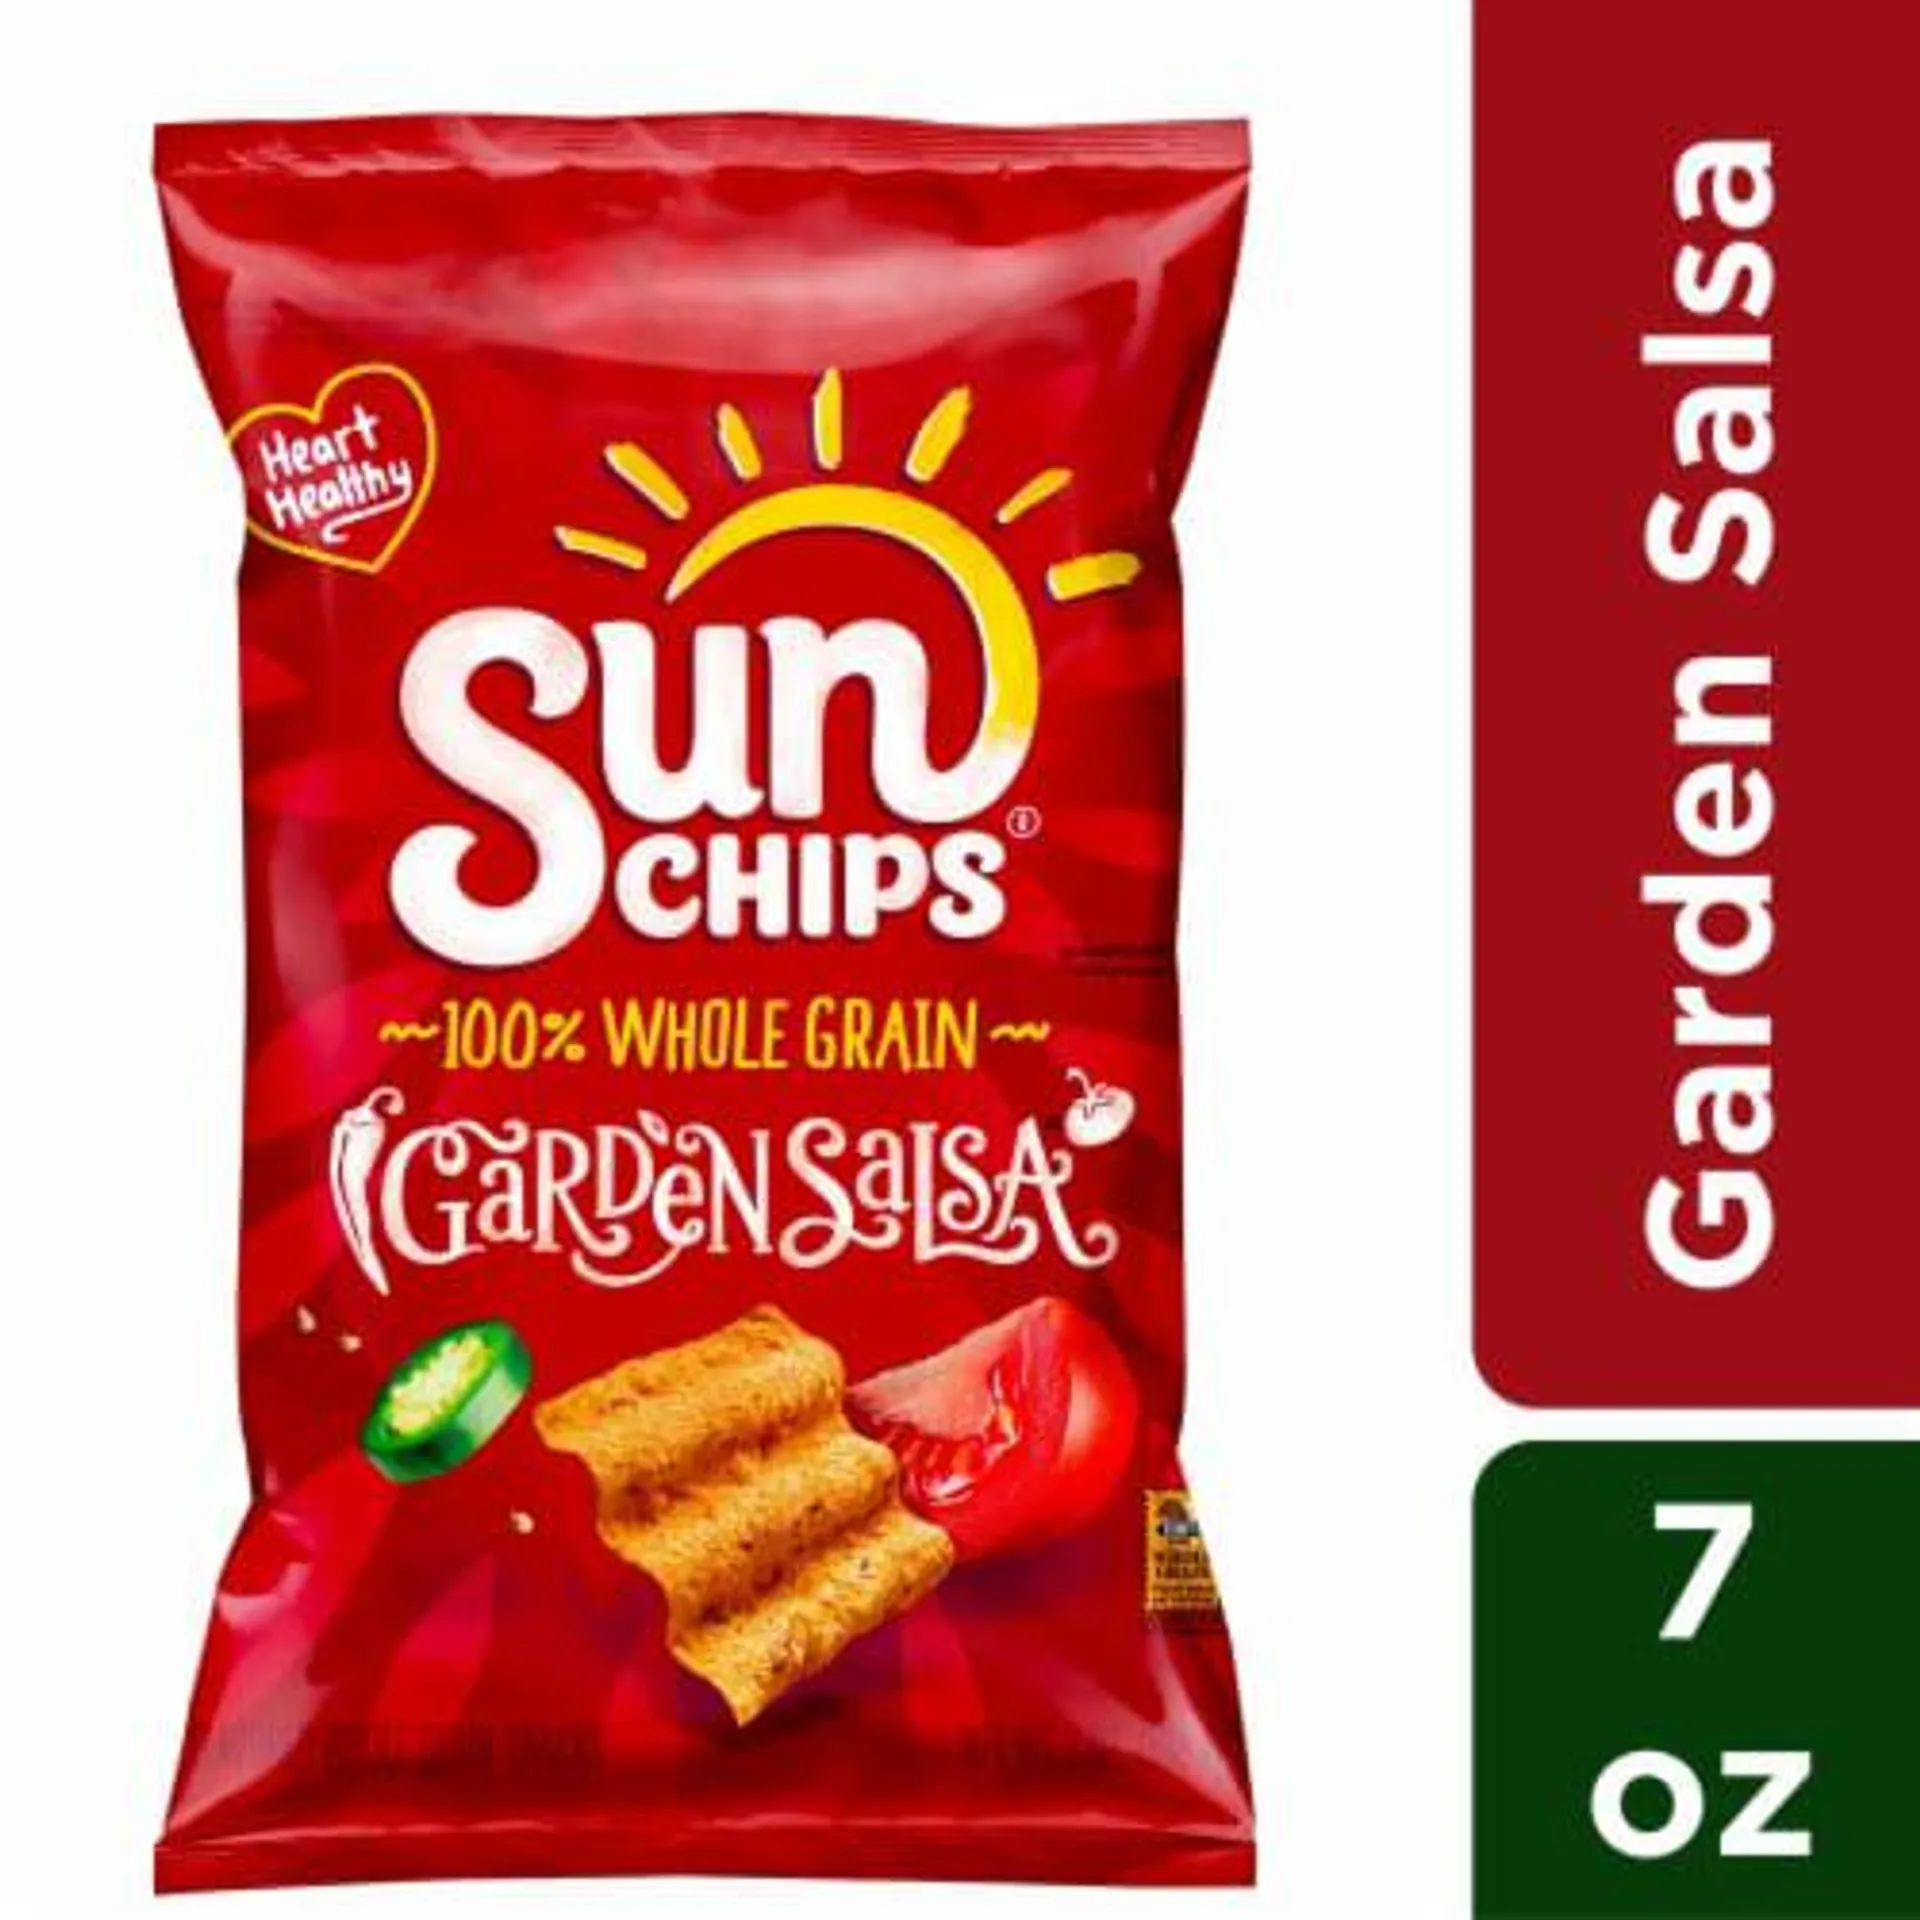 SunChips® Garden Salsa Whole Grain Chips